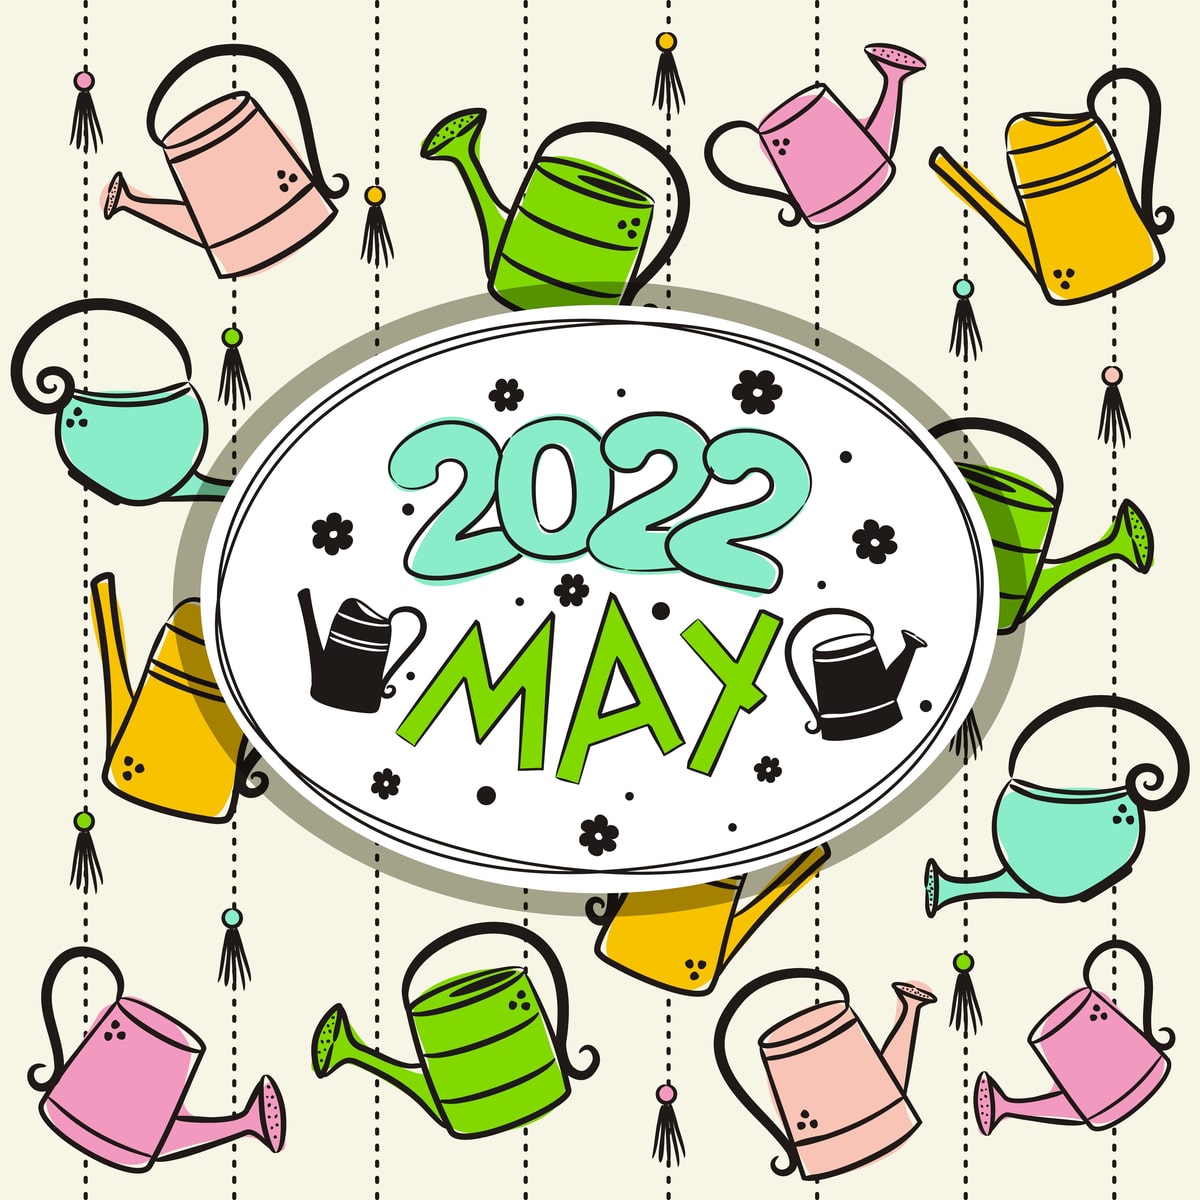 May 2022 psoter